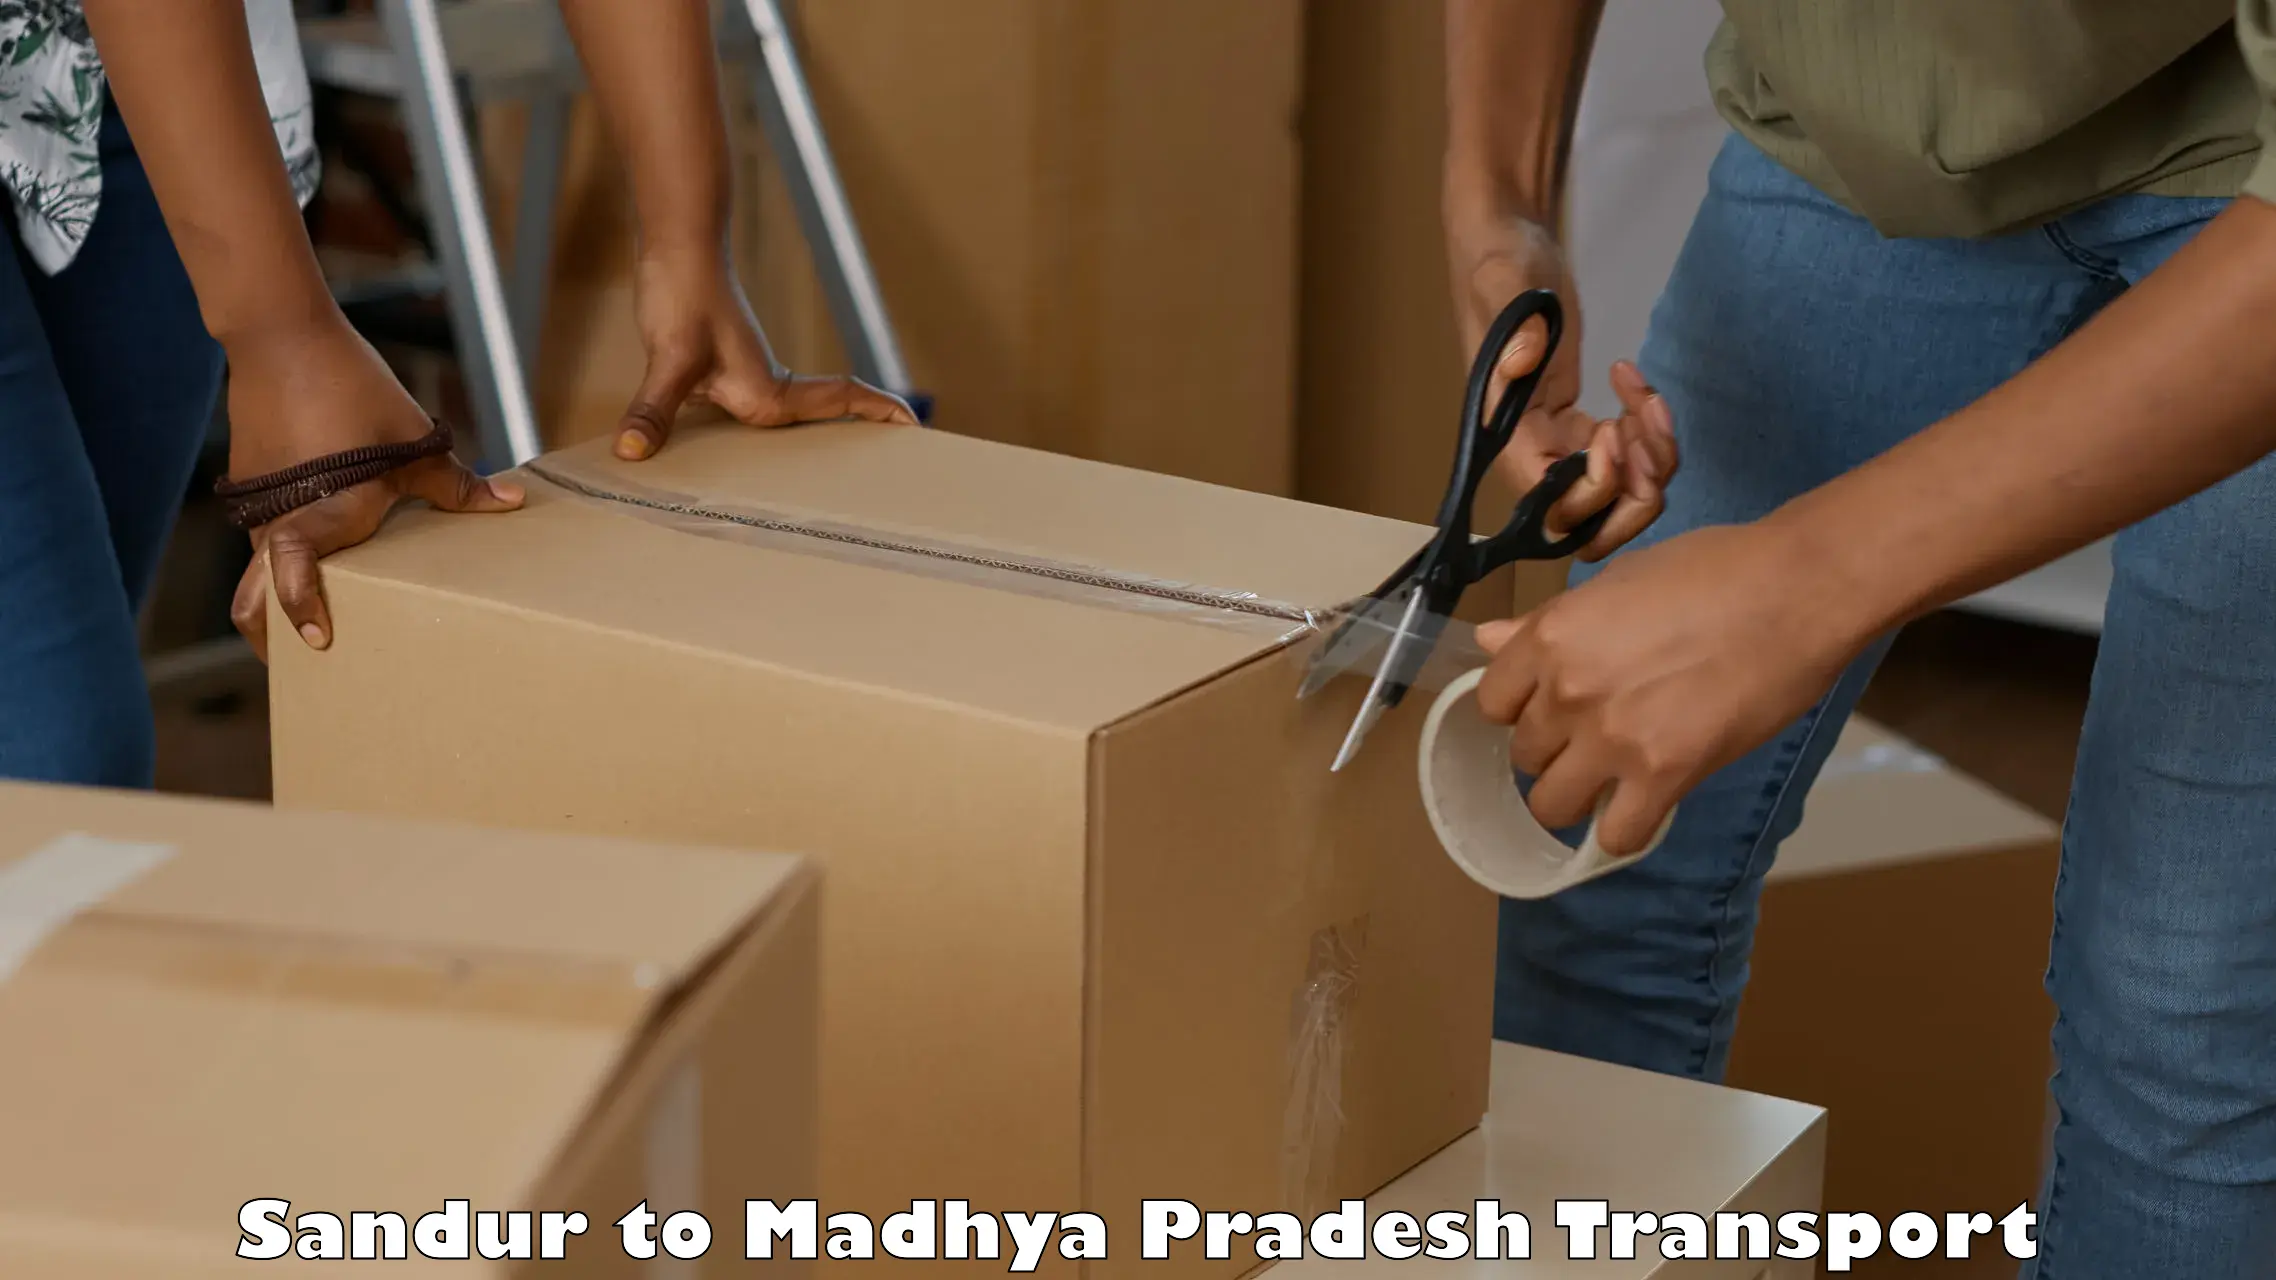 Vehicle parcel service Sandur to Vidisha